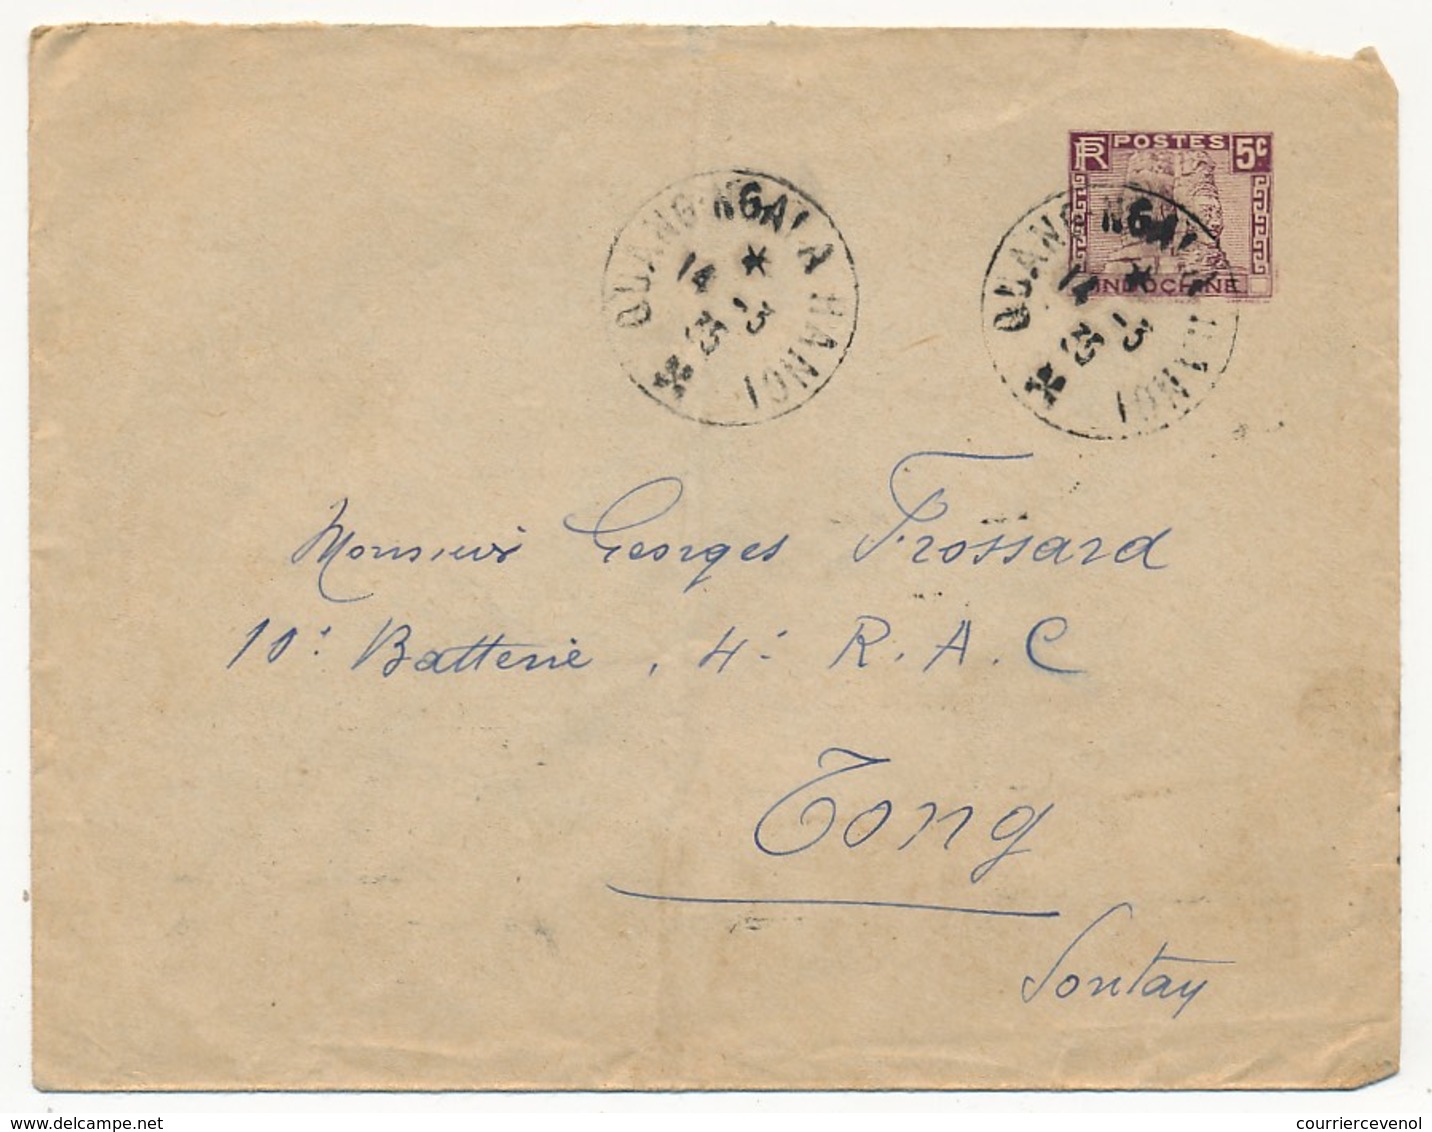 INDOCHINE - Enveloppe (entier 5c) Oblitérée "Ouang-Ngai à Hanoi" 14-3-1935 (Ferroviaire Ambulant/Convoyeur) - Lettres & Documents